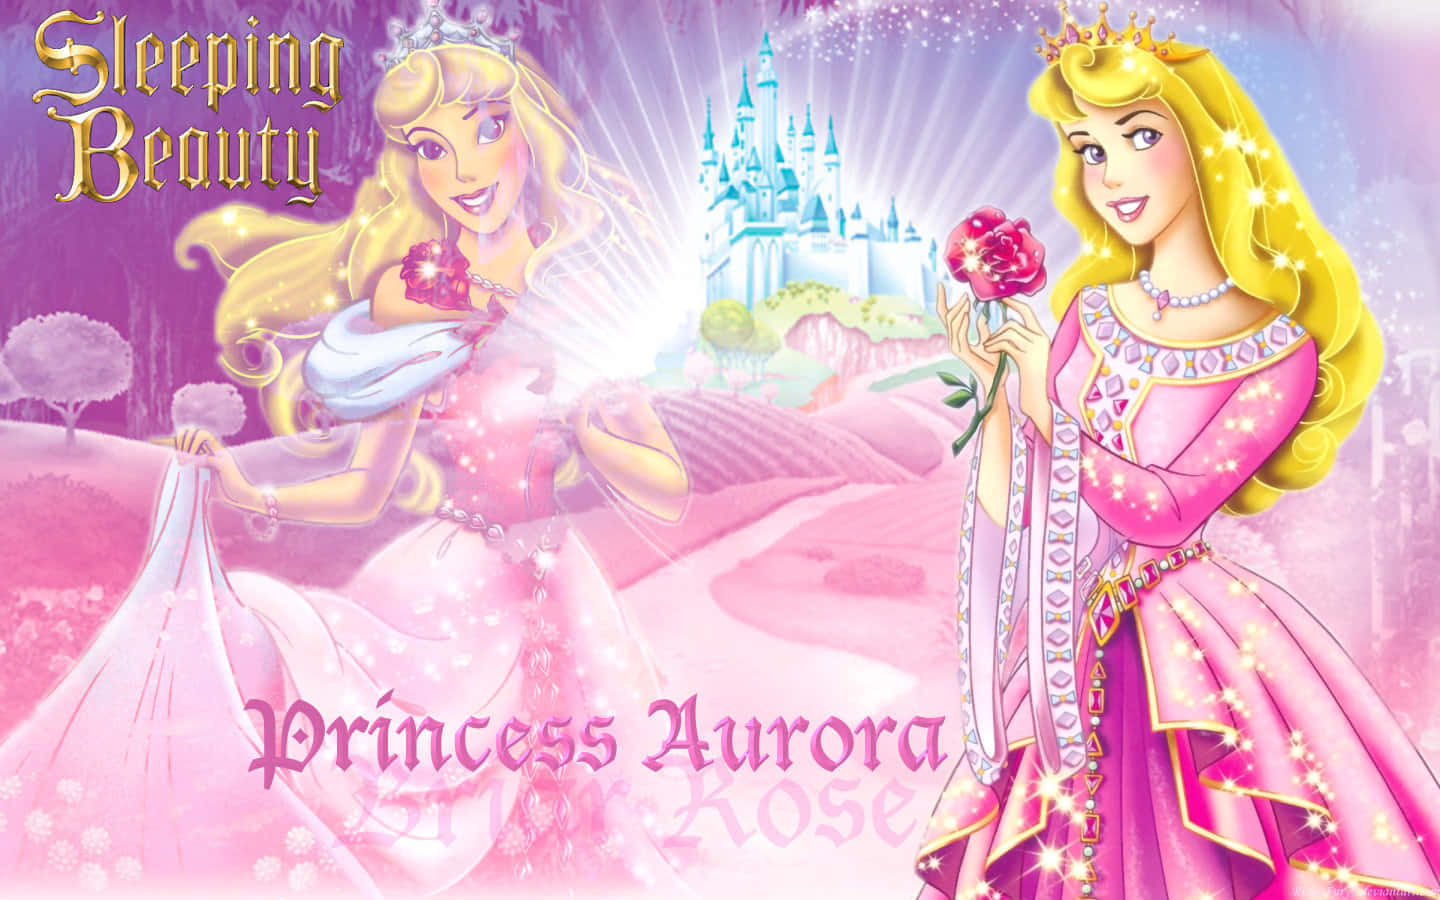 Fireelskede Disney-prinsesser - Jasmine, Rapunzel, Cinderella Og Belle.